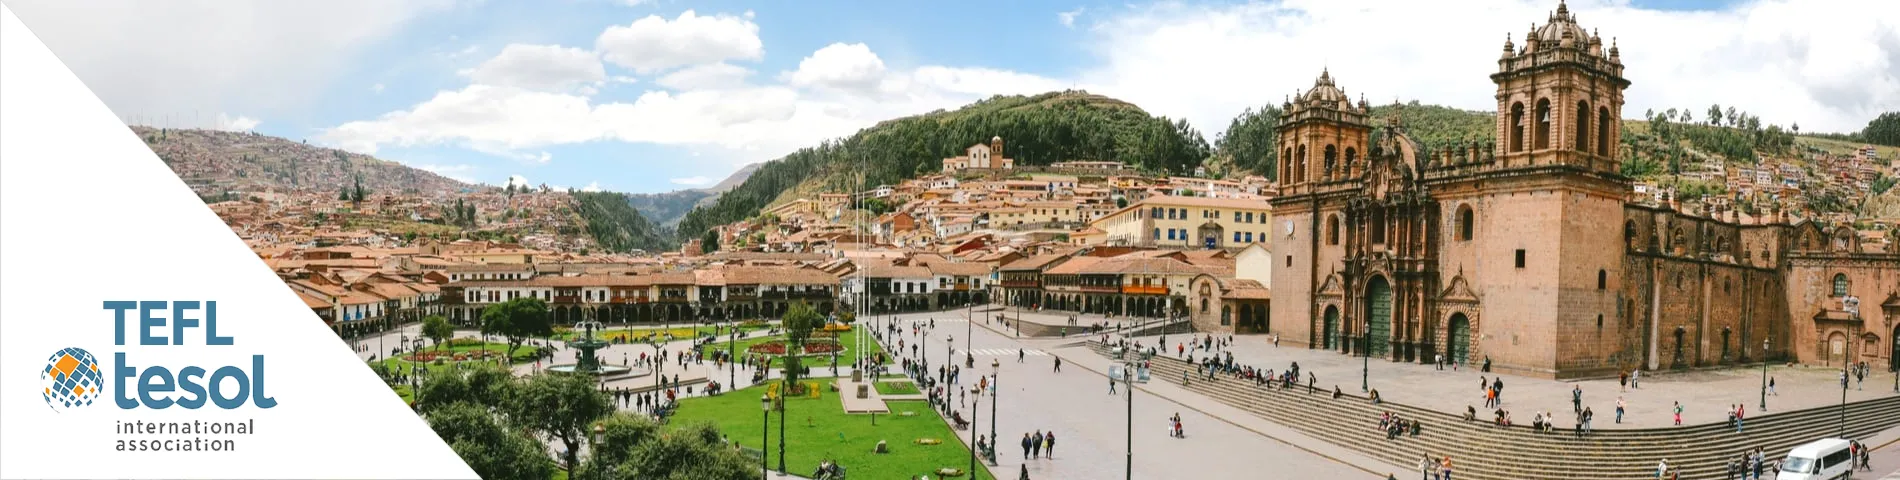 กุสโก (Cuzco) - การสอบวัดระดับด้านการสอน TEFL/TESOL